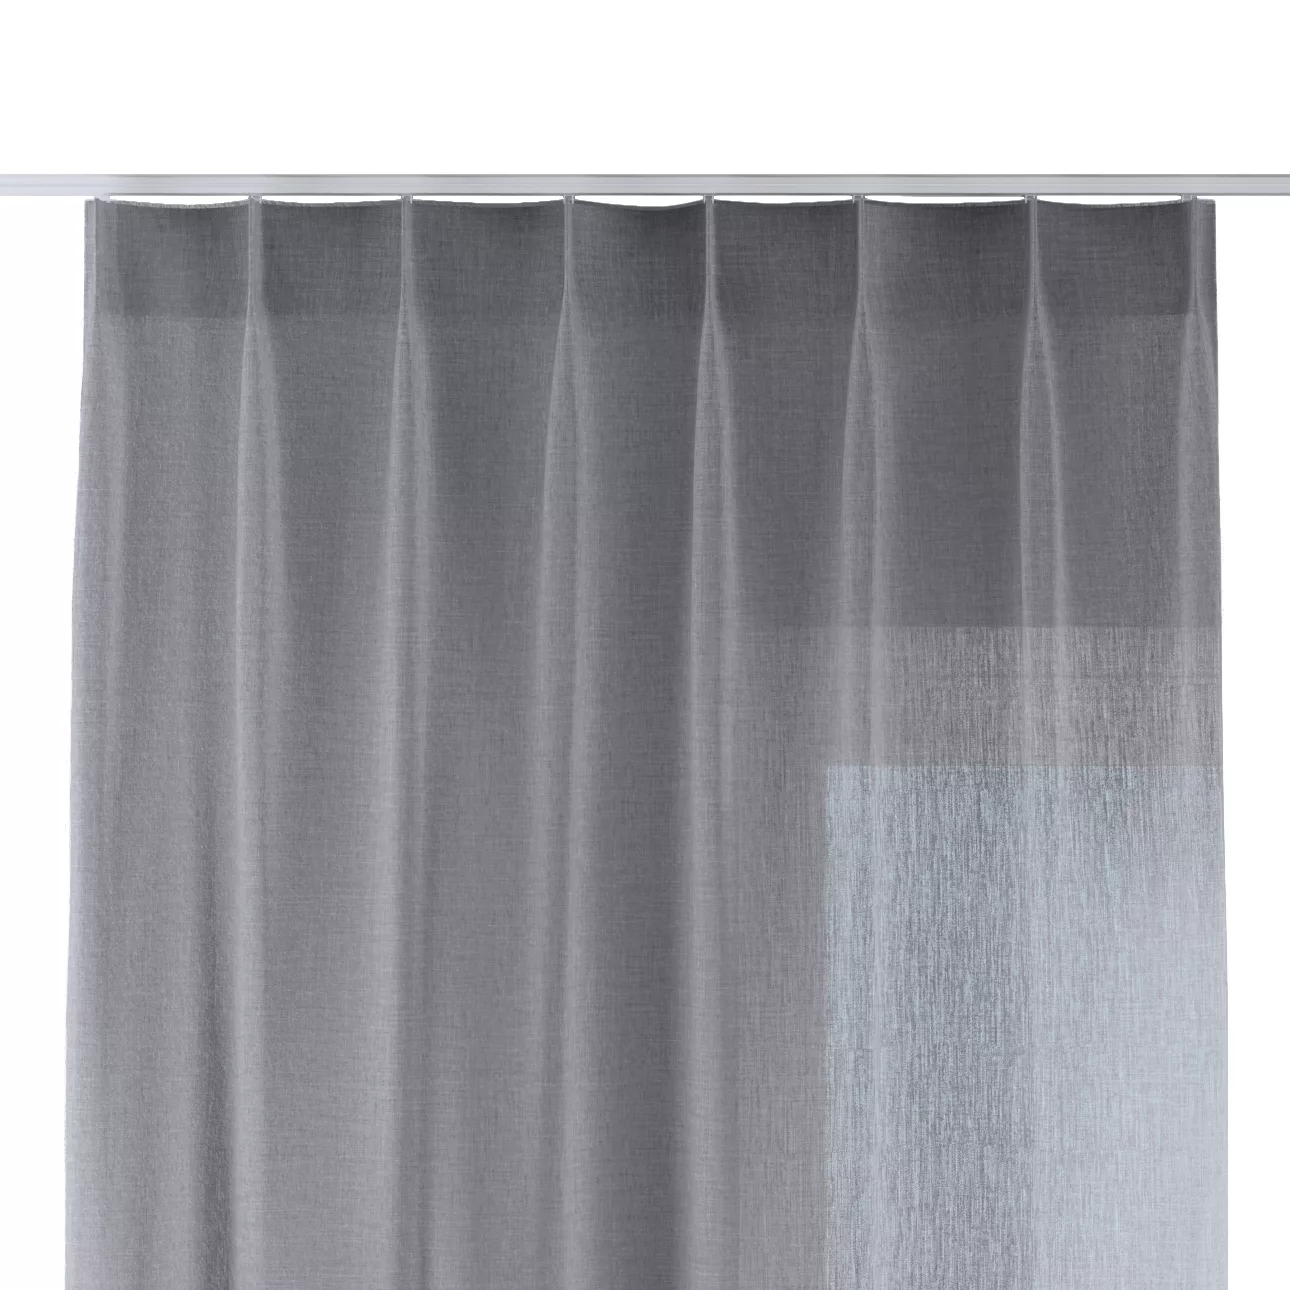 Vorhang mit flämischen 1-er Falten, grau, Delicate Premium (144-52) günstig online kaufen